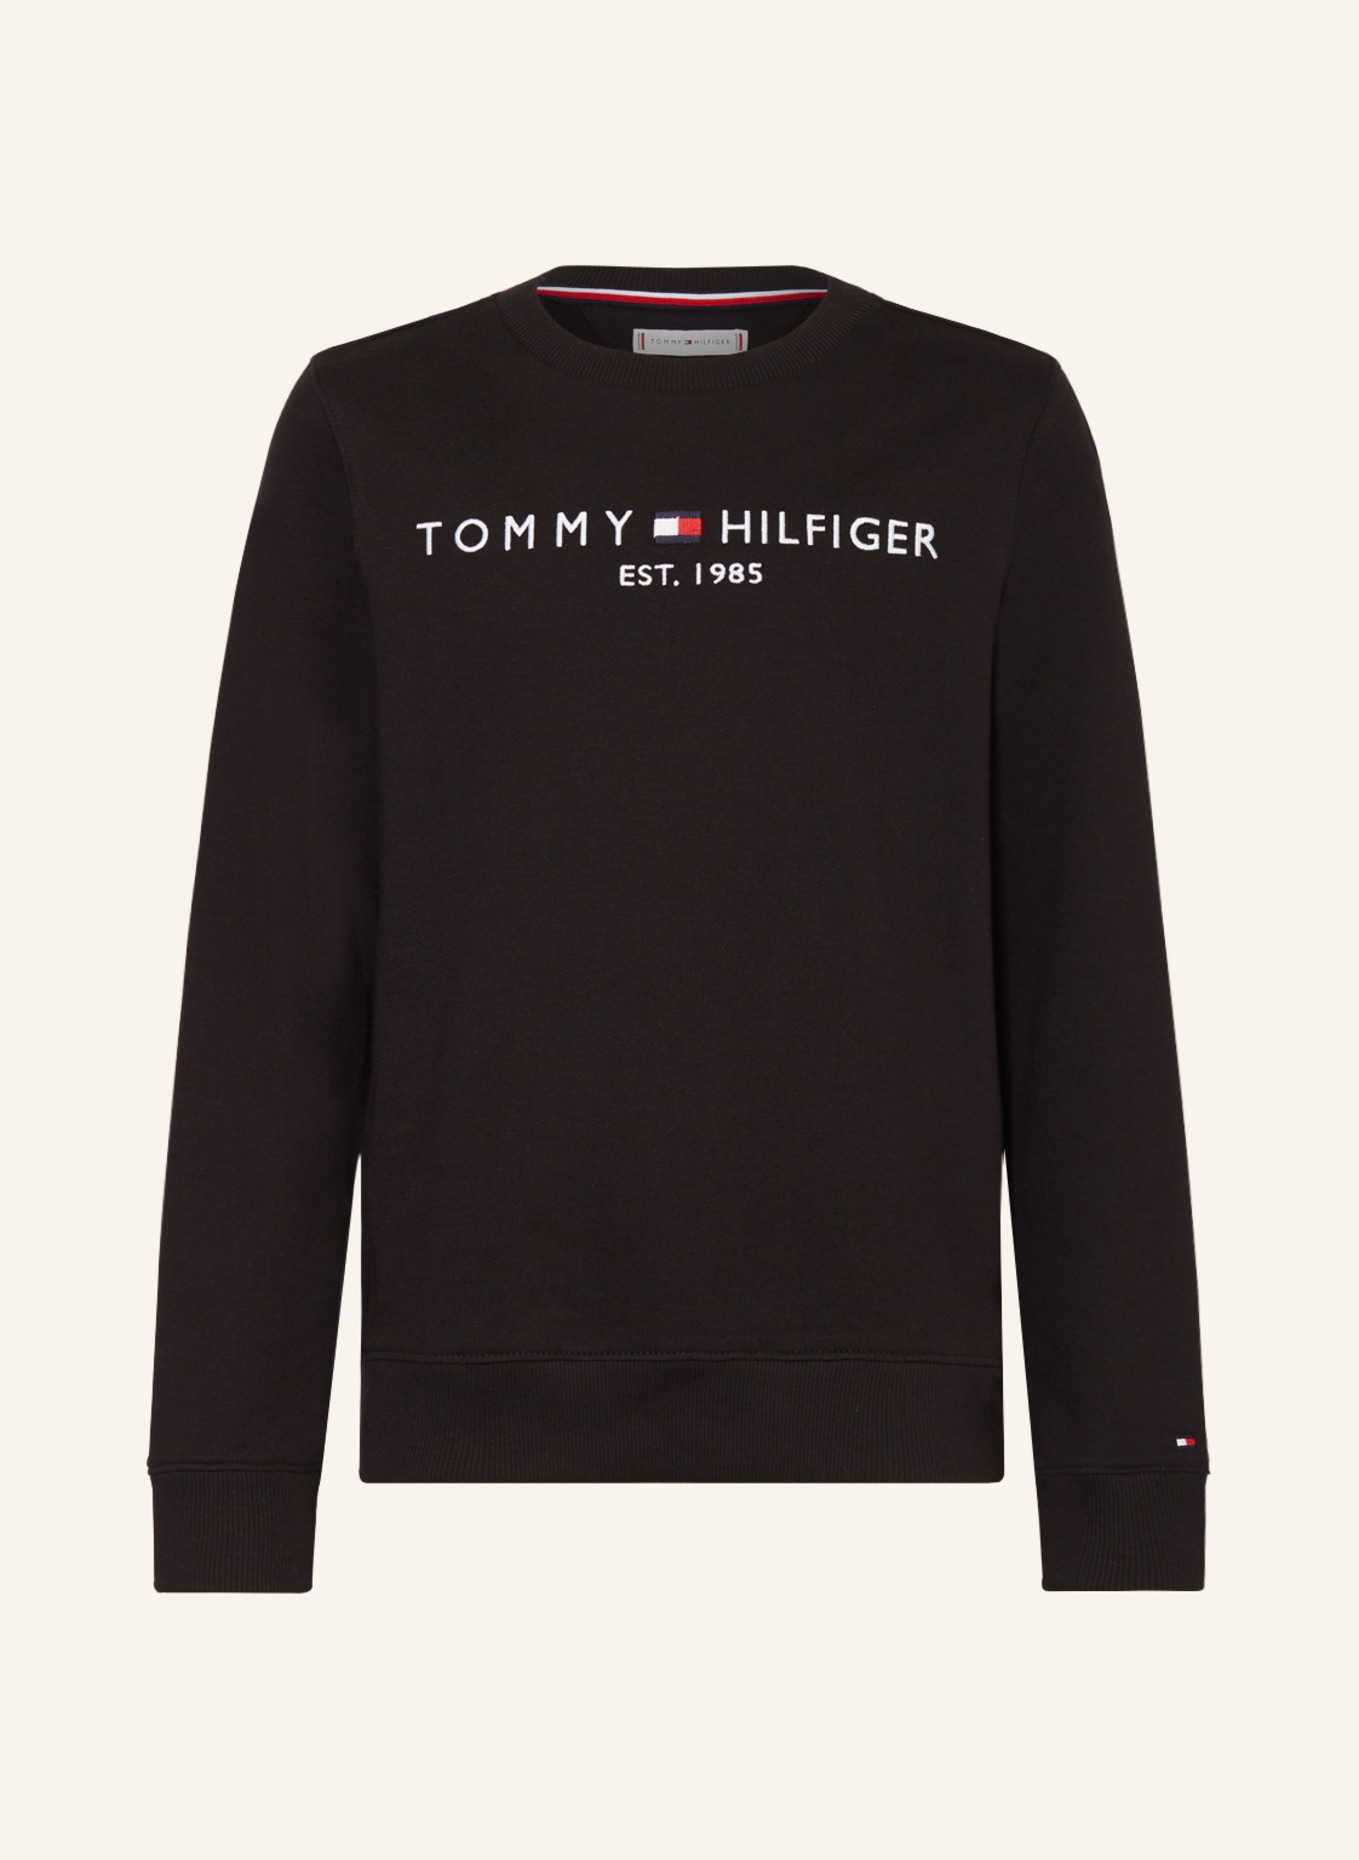 TOMMY HILFIGER Sweatshirt, Farbe: SCHWARZ/ WEISS (Bild 1)